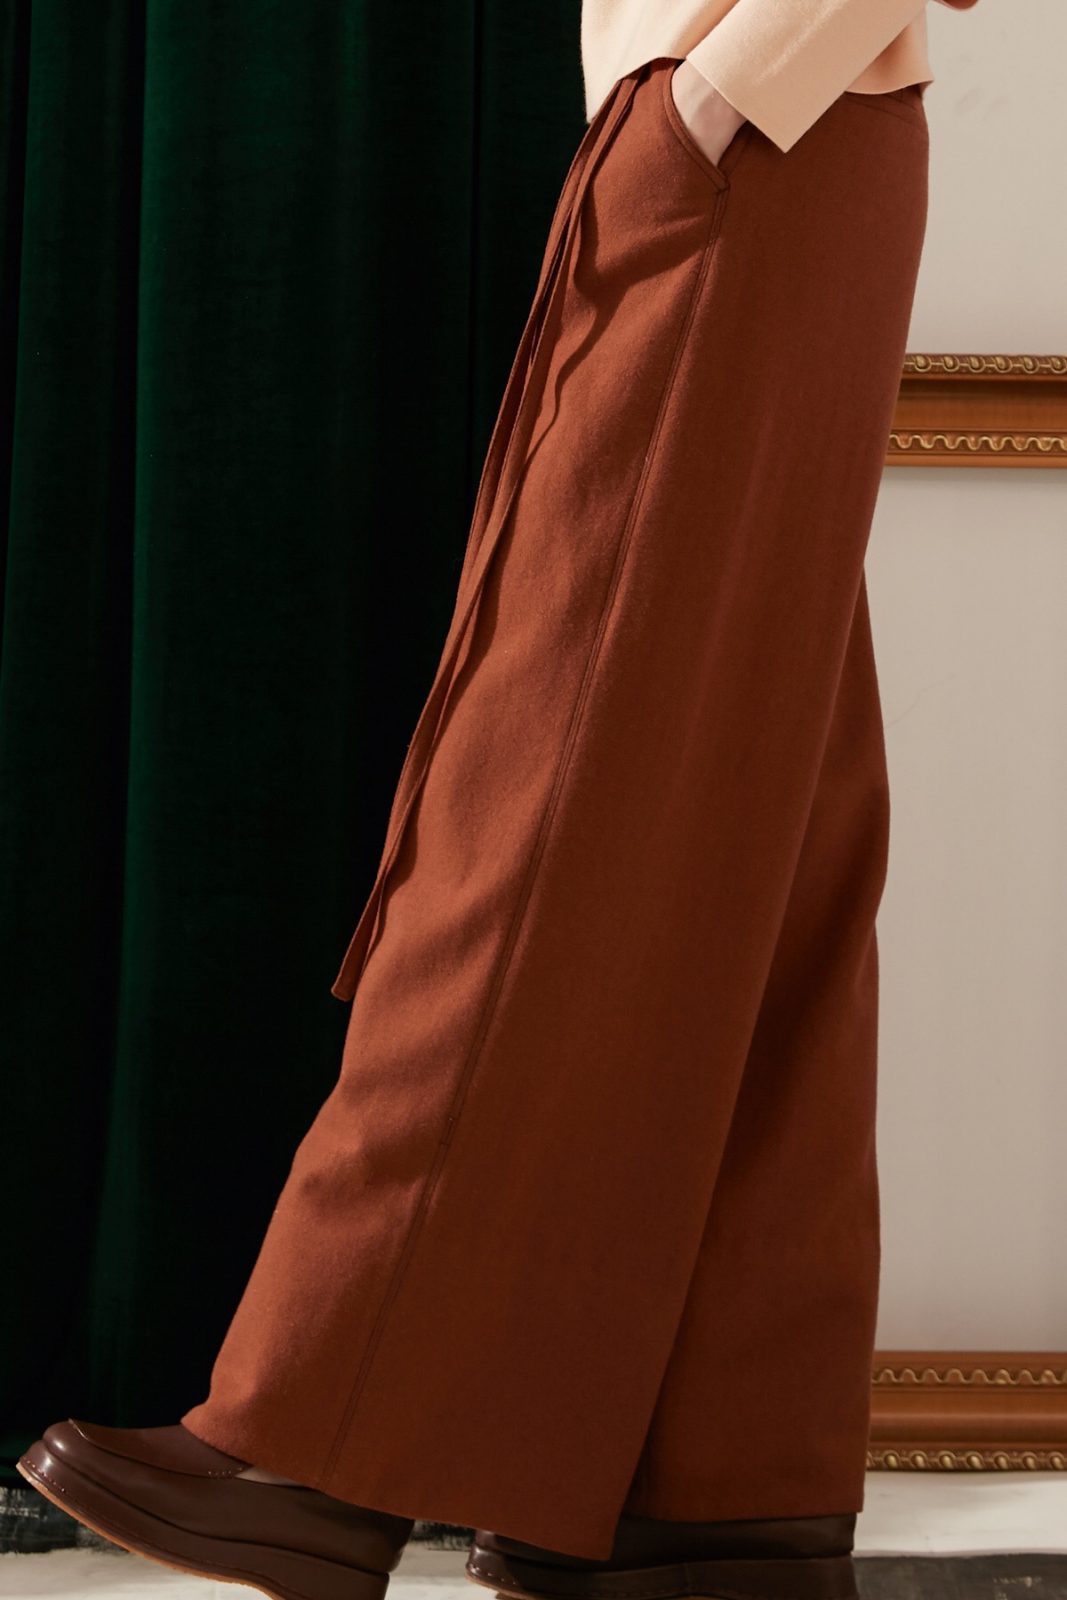 SKYE modern minimalist women fashion long wool wide legged pants with tie belt brown 5